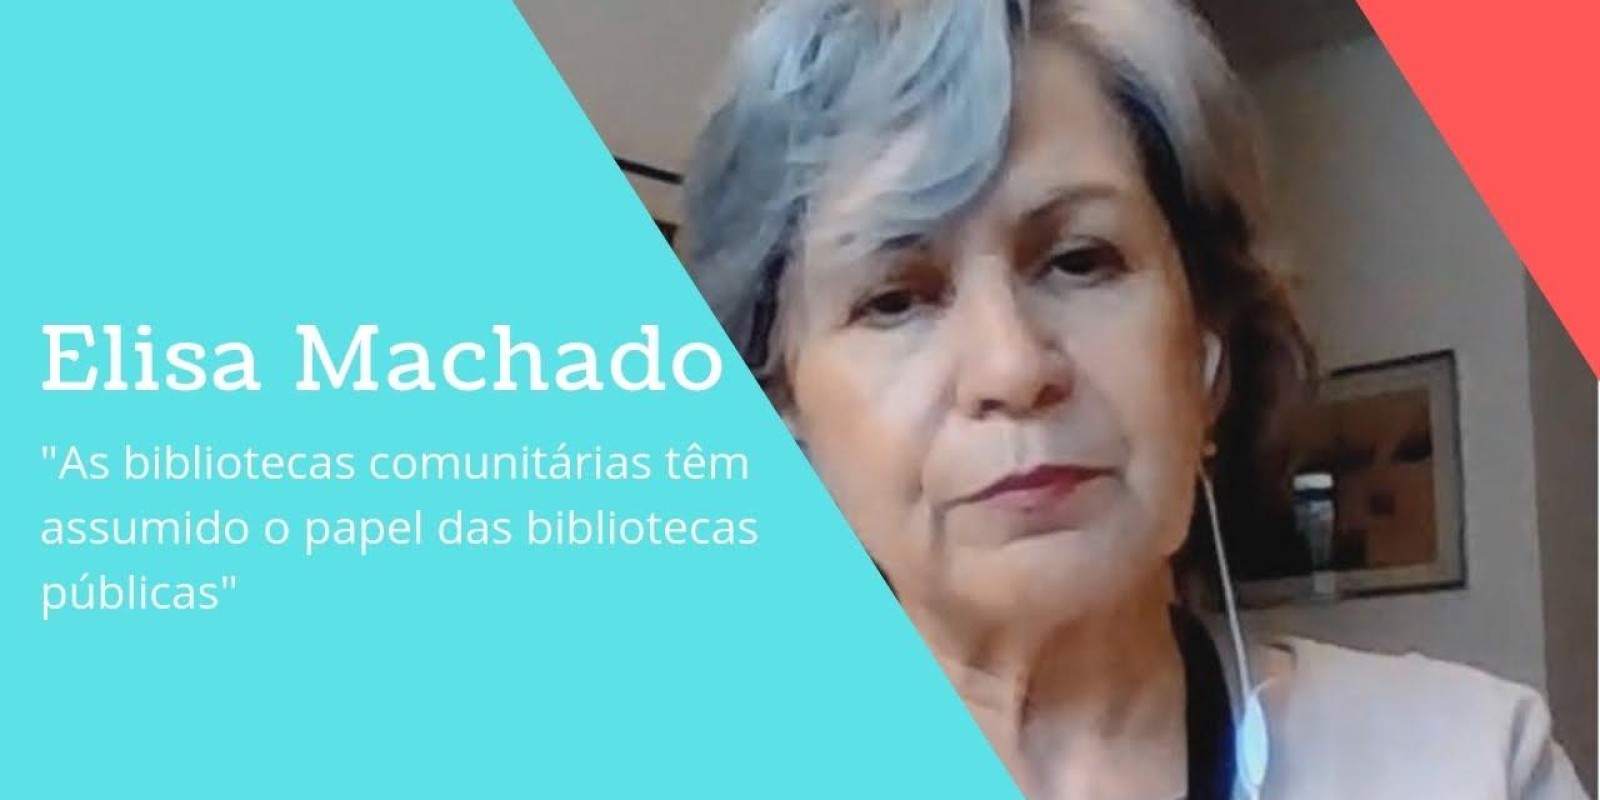 Para Elisa Machado, as bibliotecas comunitárias têm assumido o papel das bibliotecas públicas